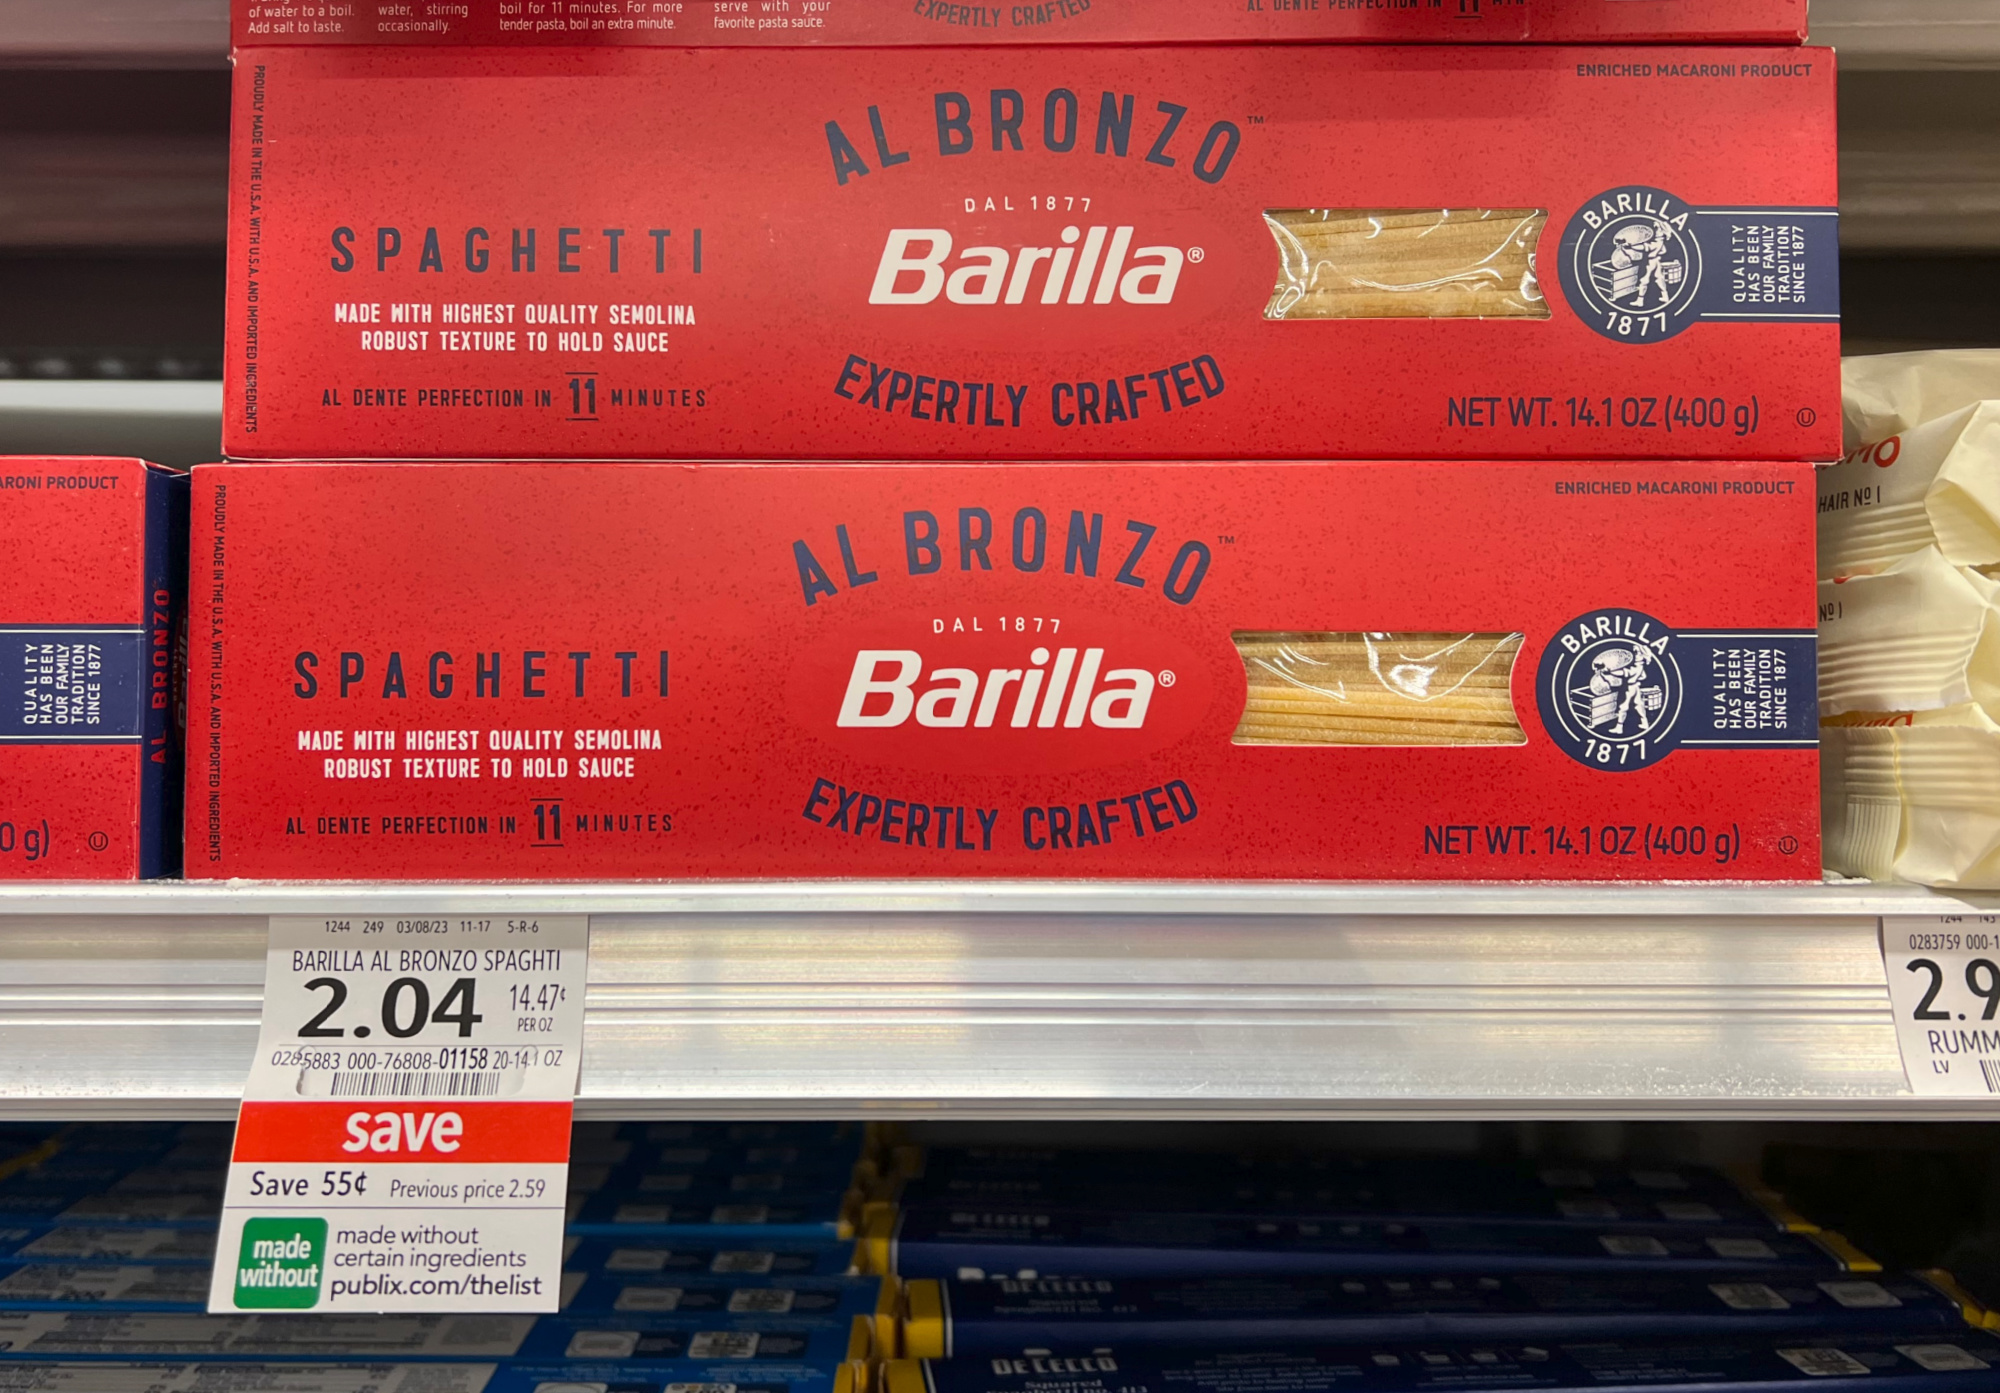 Barilla - Barilla, Al Bronzo - Linguine Pasta (14.1 oz), Shop